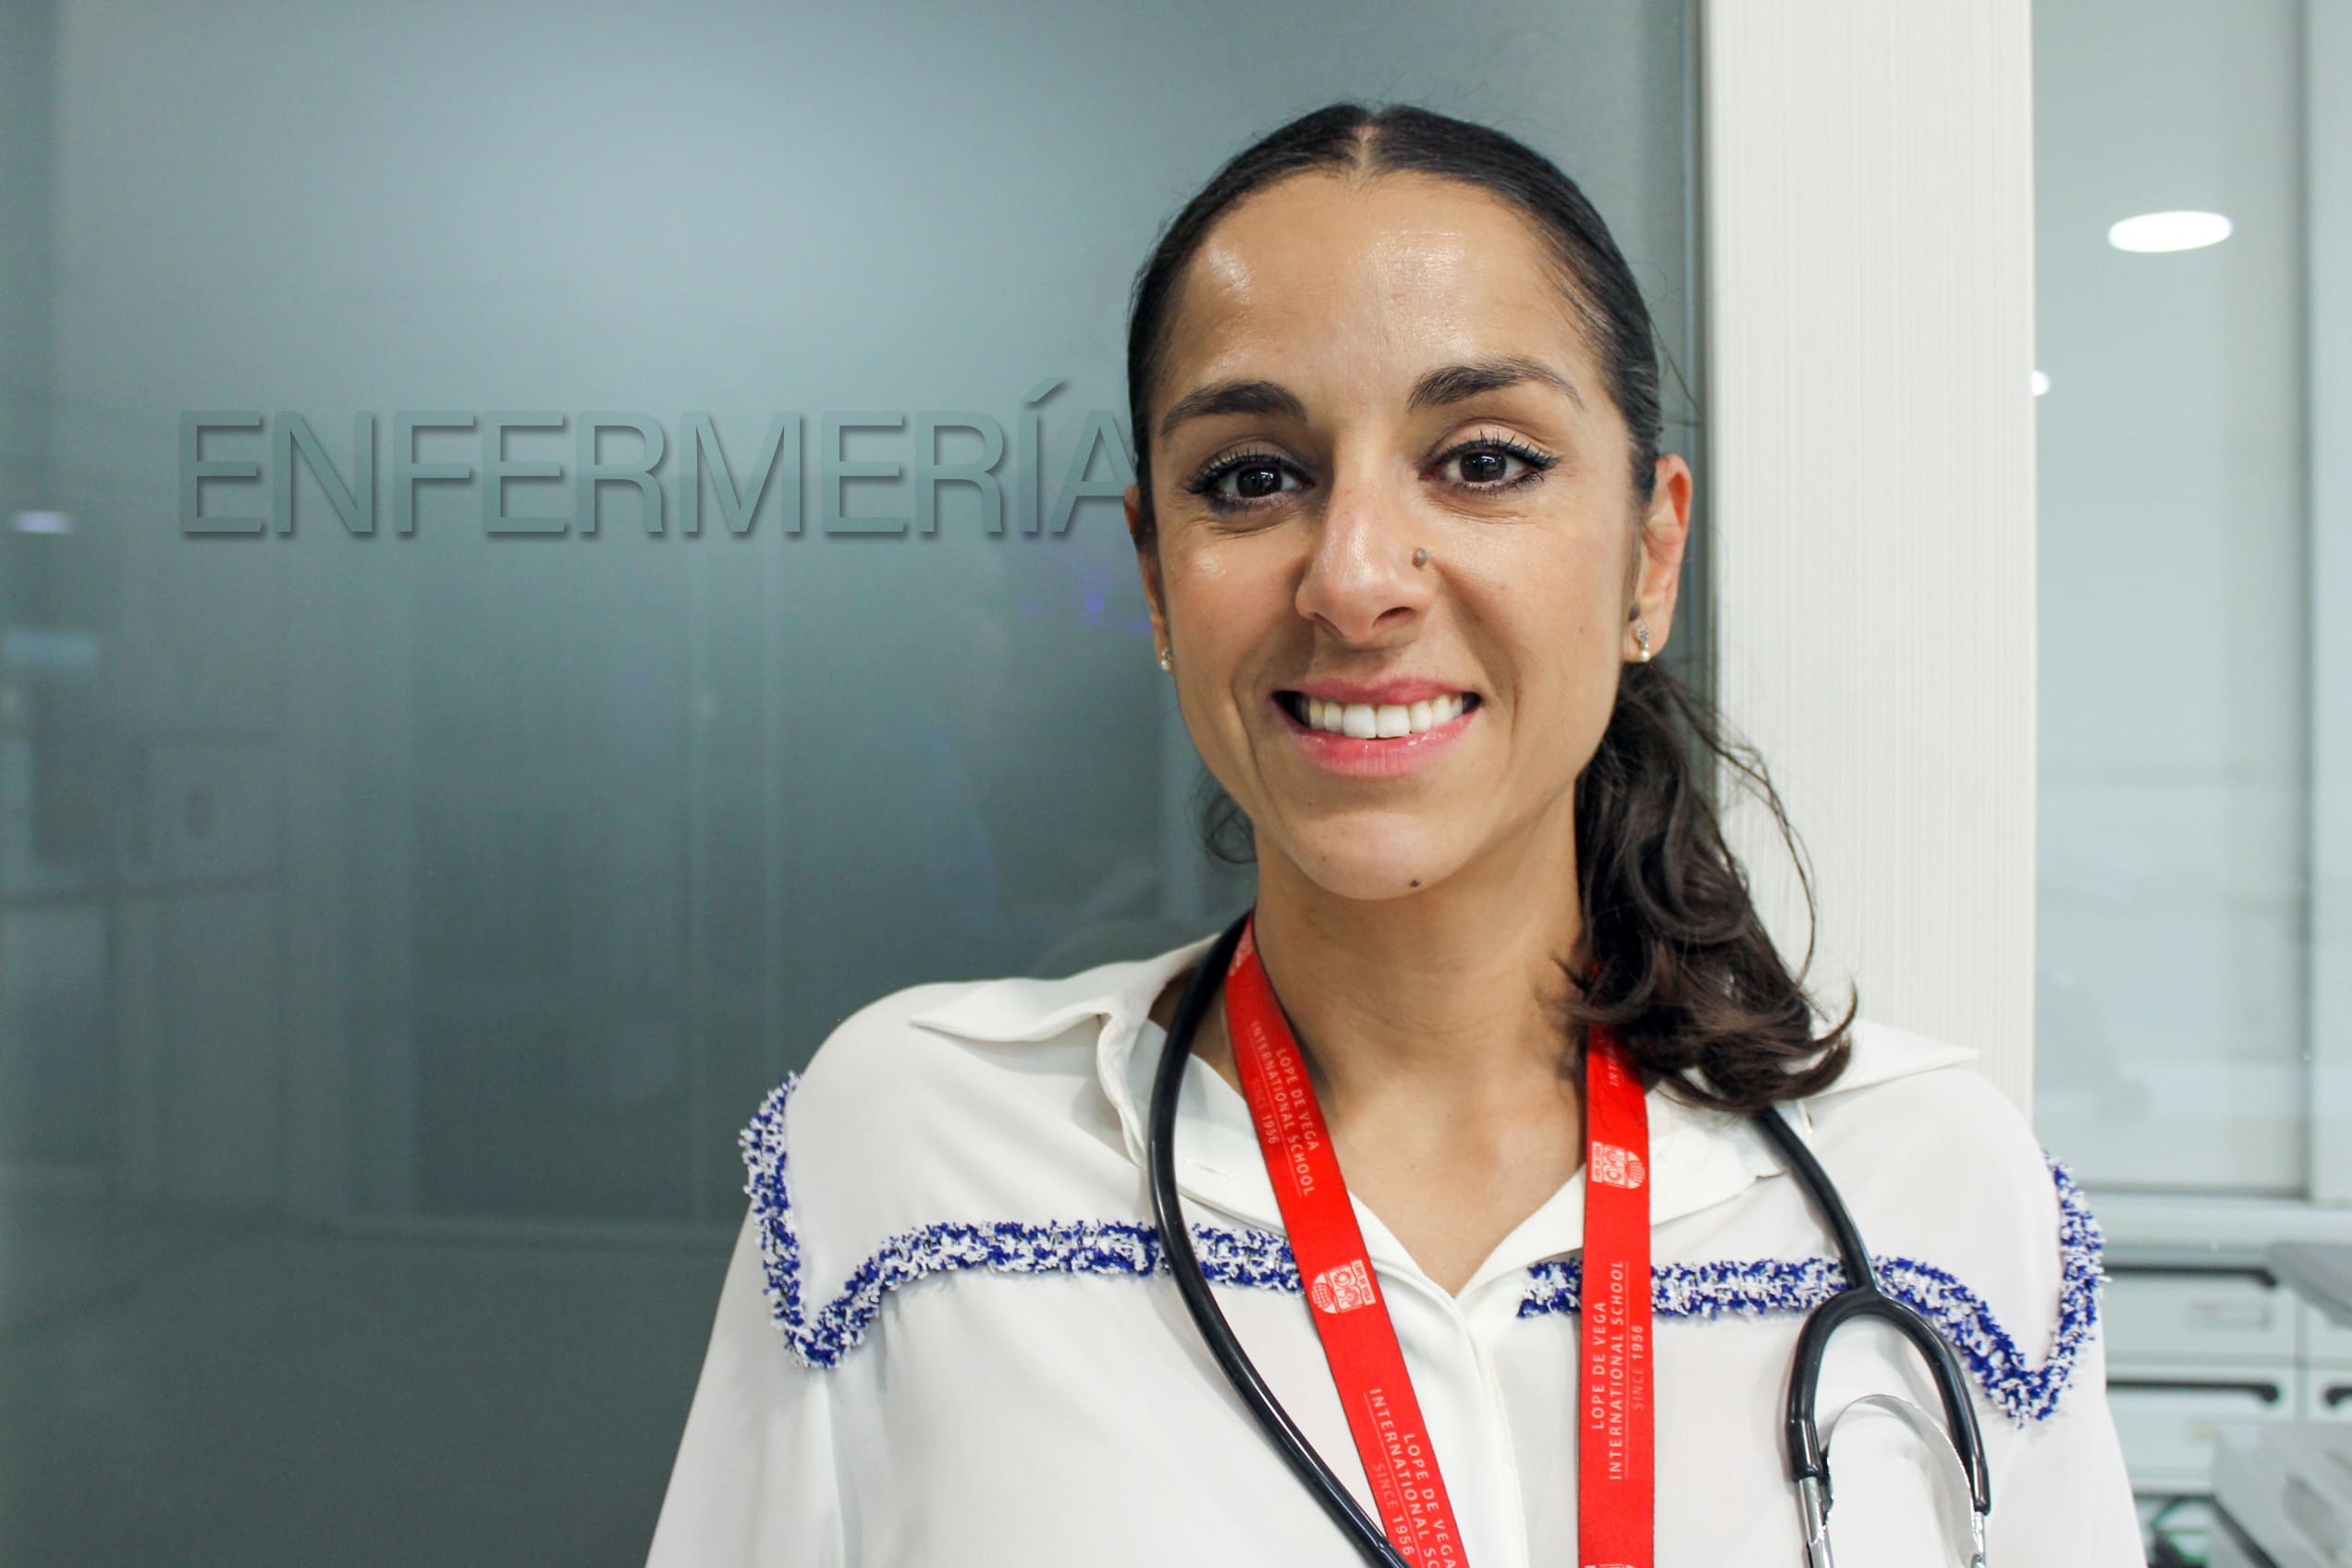 enfermería escolar - Ana Hoyo - enfermera